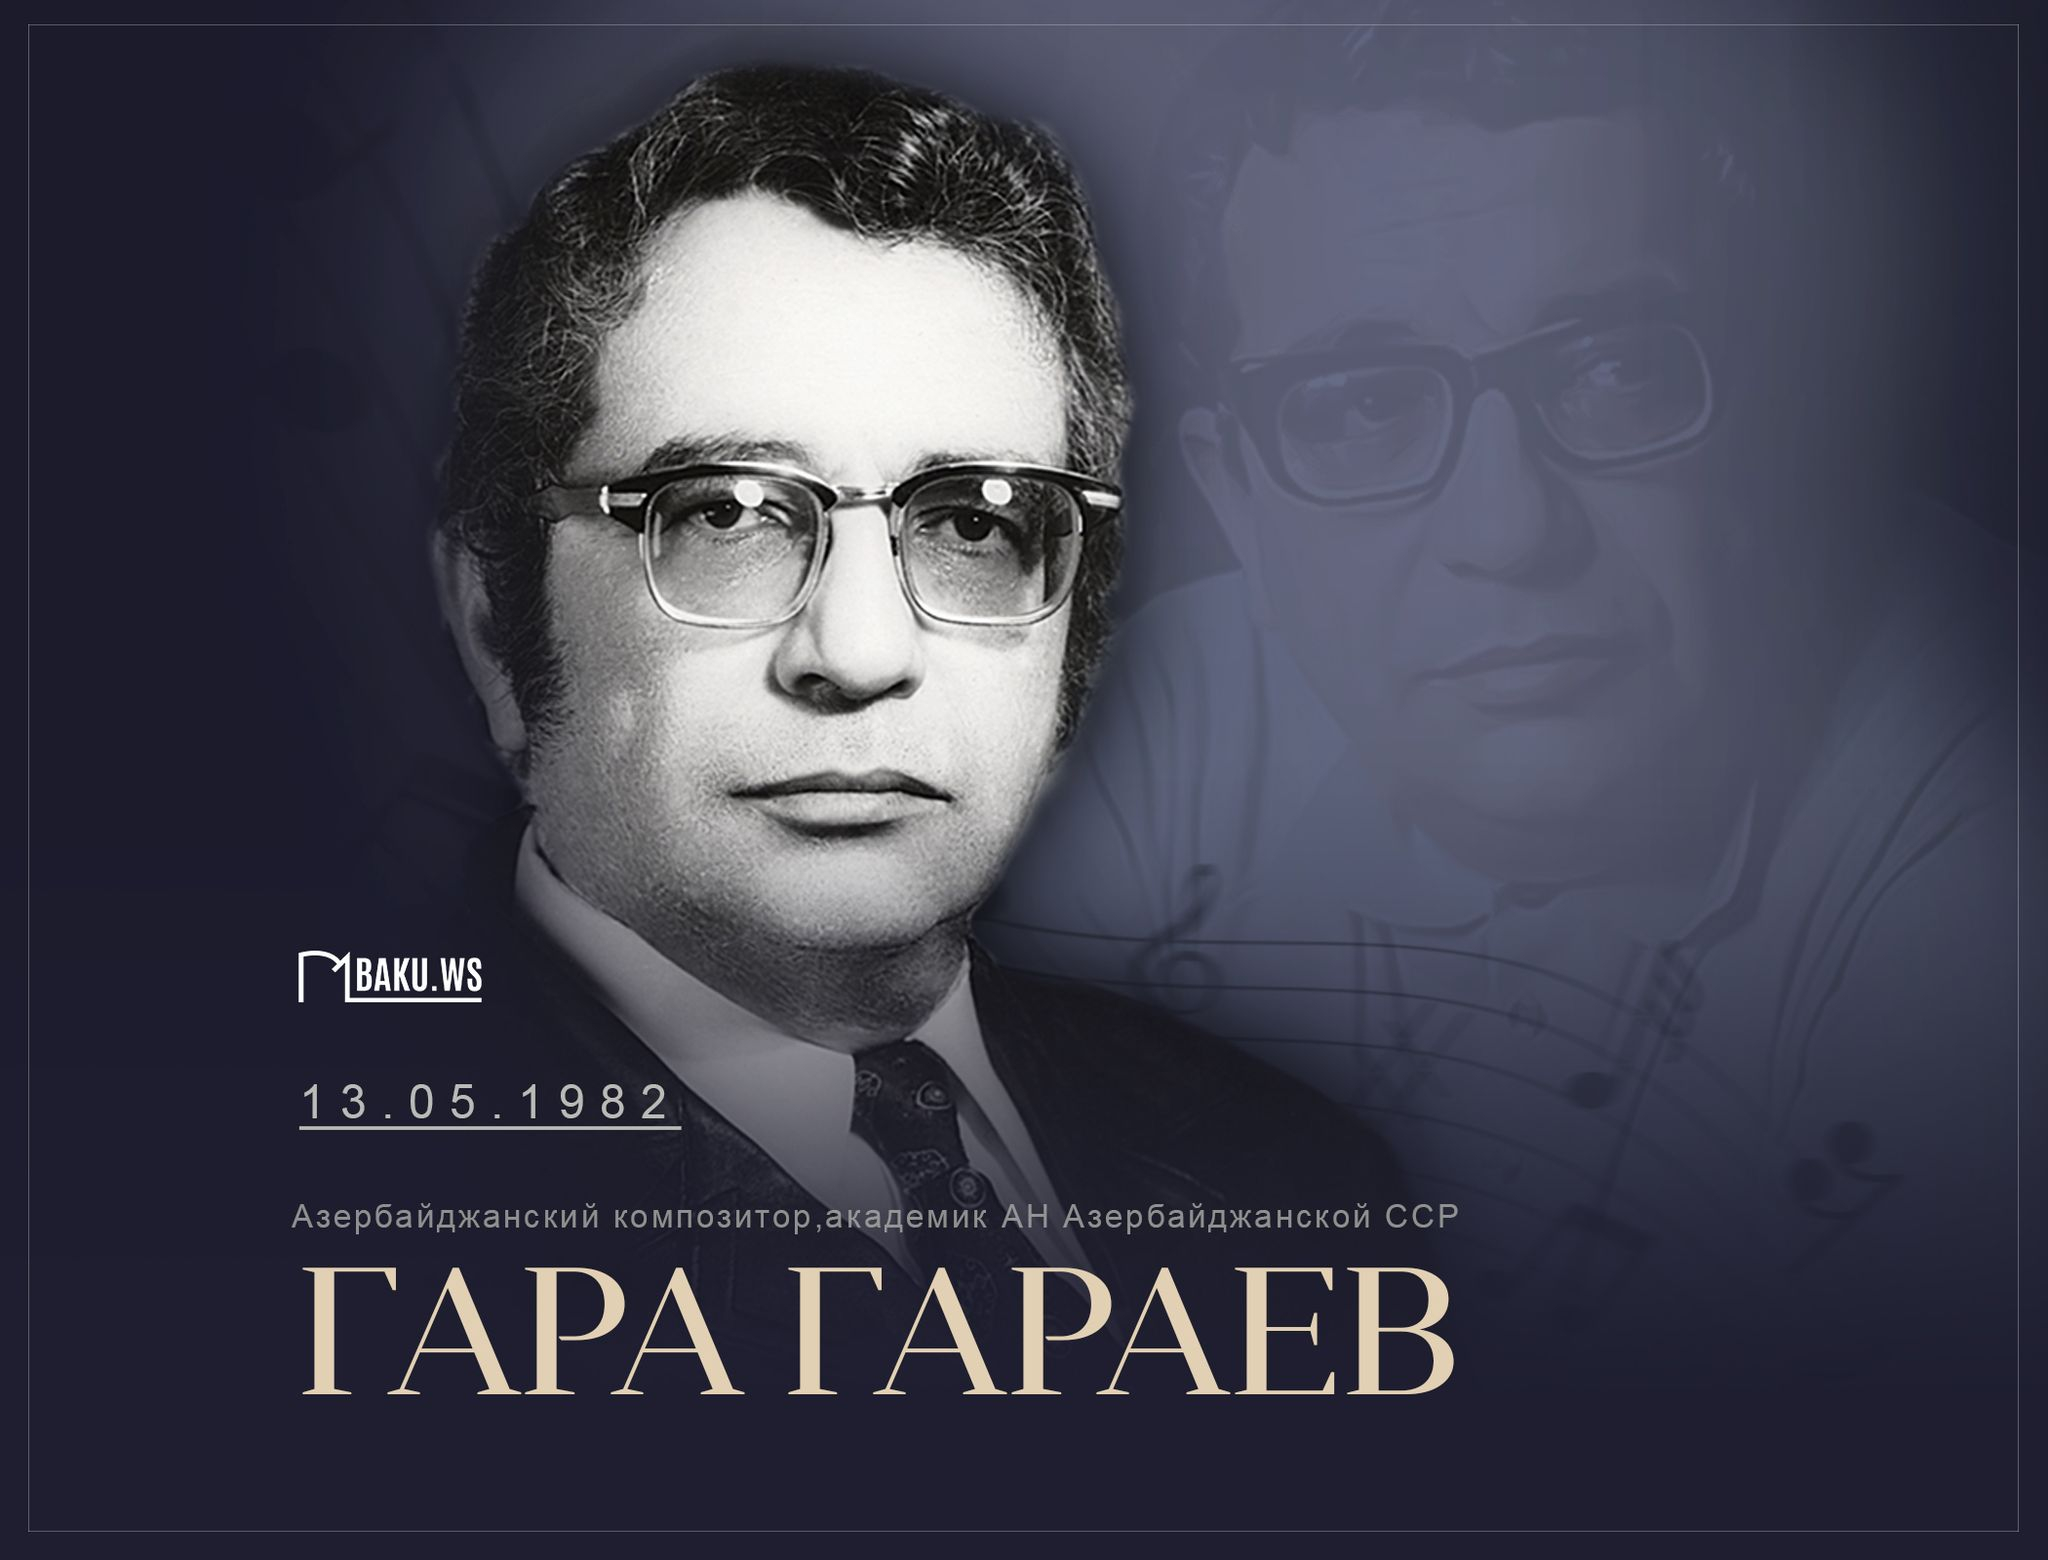 Сегодня день памяти выдающегося азербайджанского композитора Гара Гараева